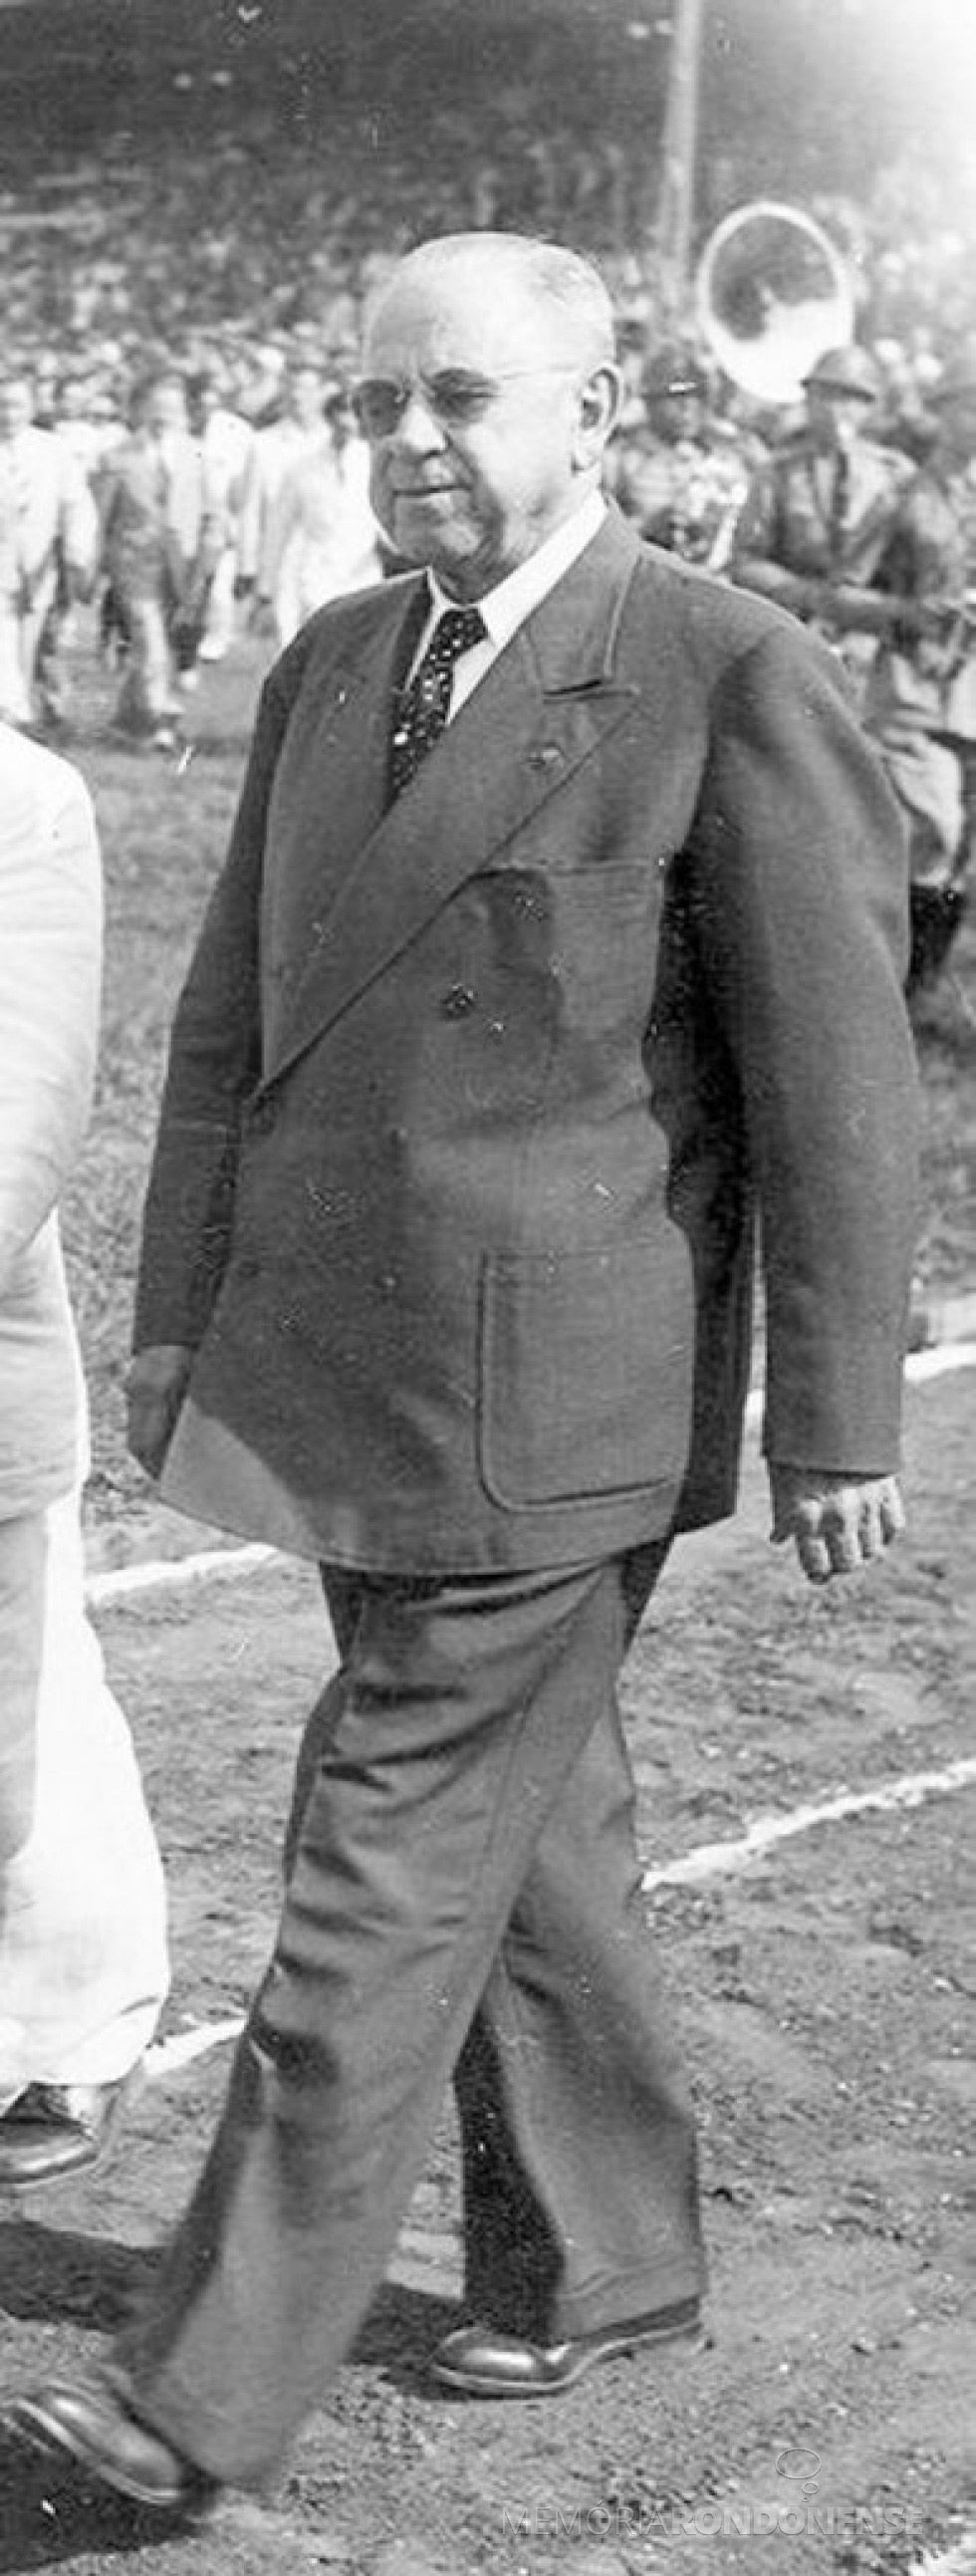 || Manoel Ribas que foi interventor e governador do Paraná, entre 1932 e 1945, falecido em janeiro de 1974.
Imagem; Acervo Aroldo Murá (Curitiba ) - FOTO 5 - 
